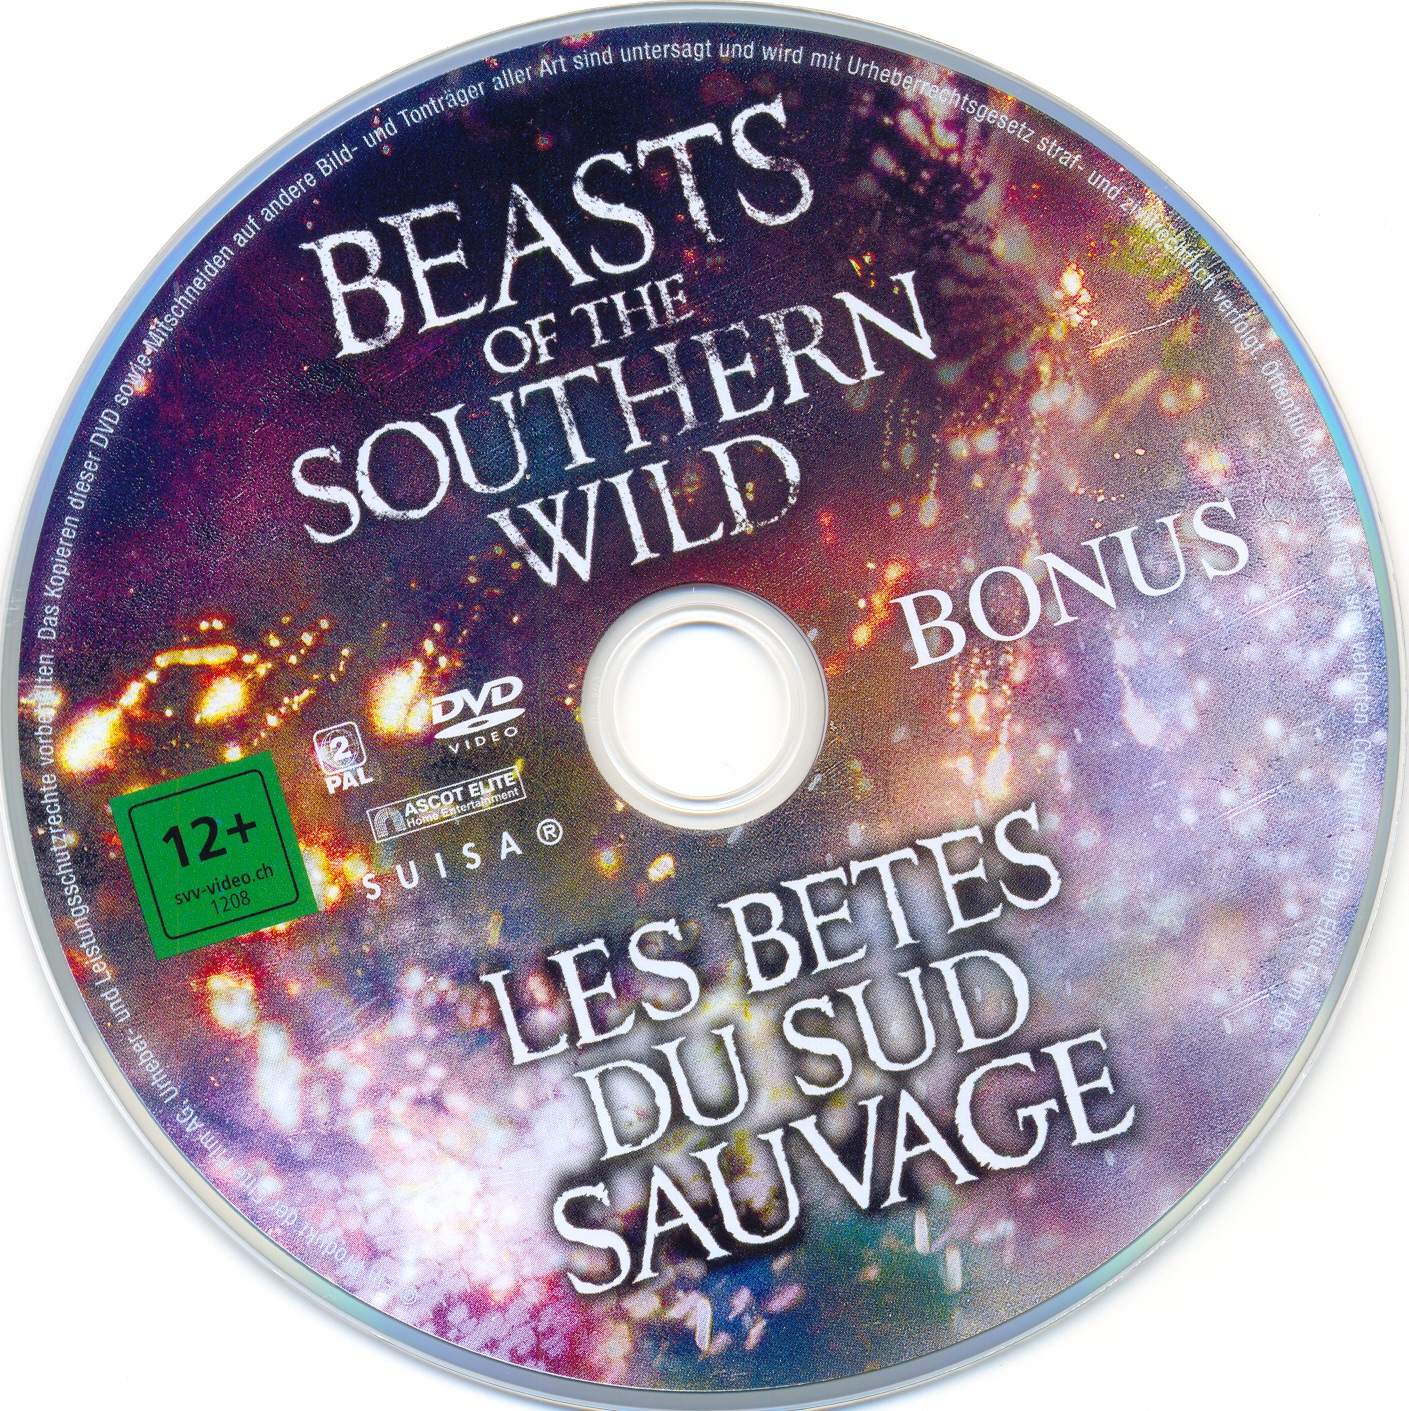 Les Btes du Sud Sauvage (Bonus)